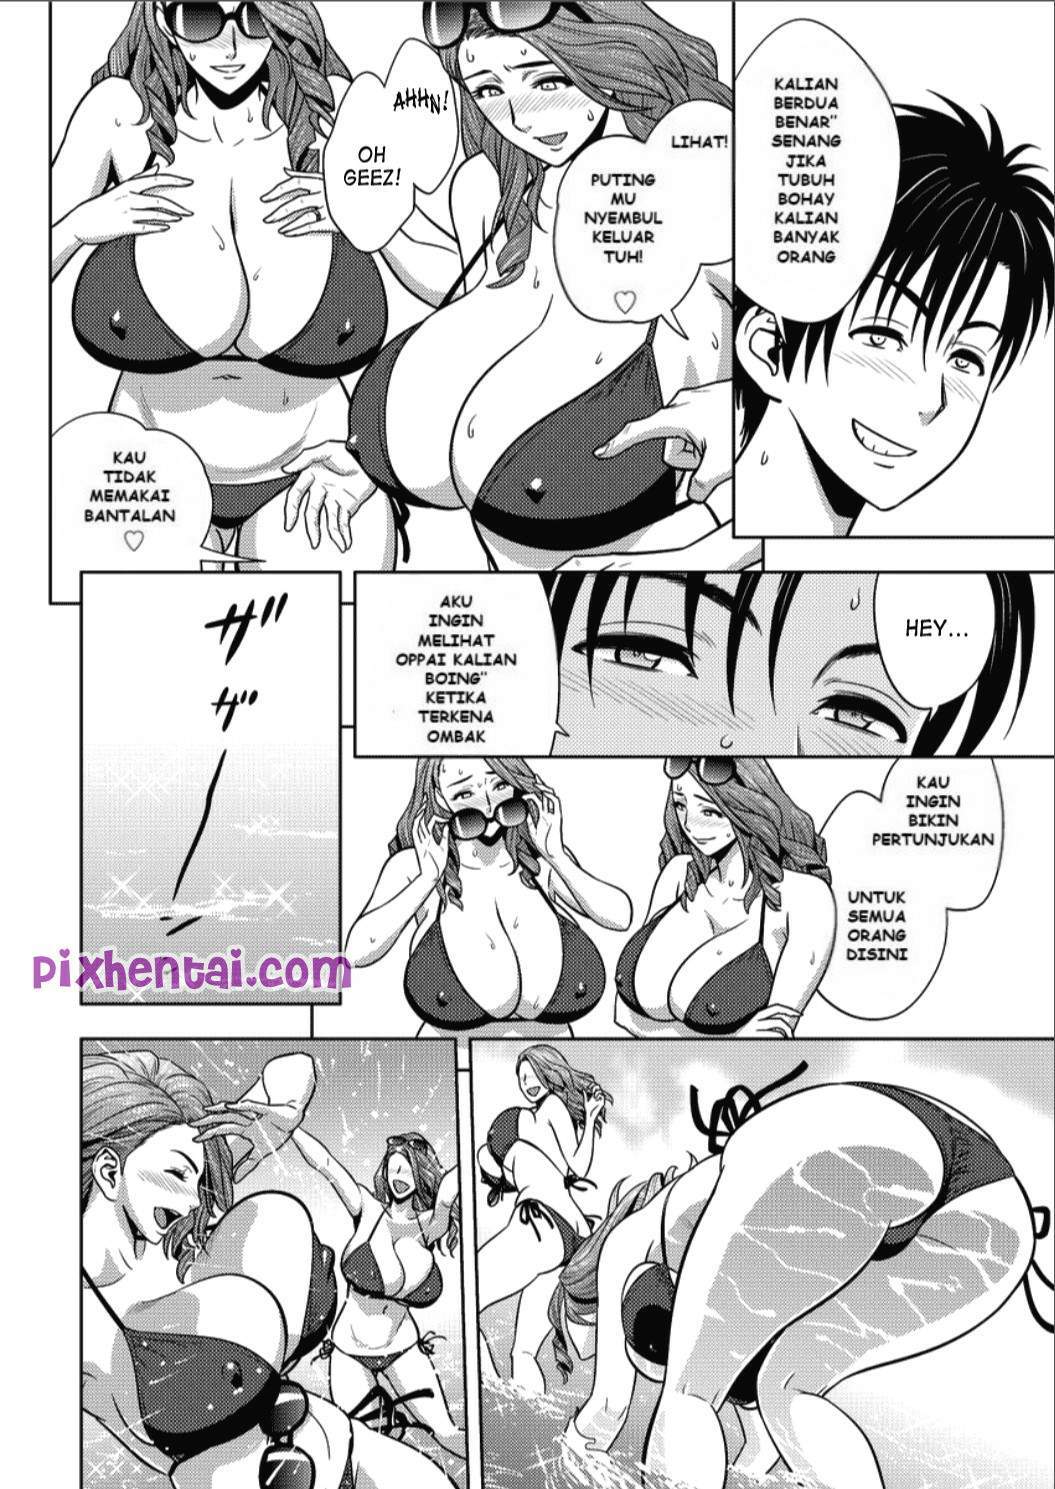 Komik hentai xxx manga sex bokep sesuatu yang dapat memuaskan tubuh dan pikiran 06